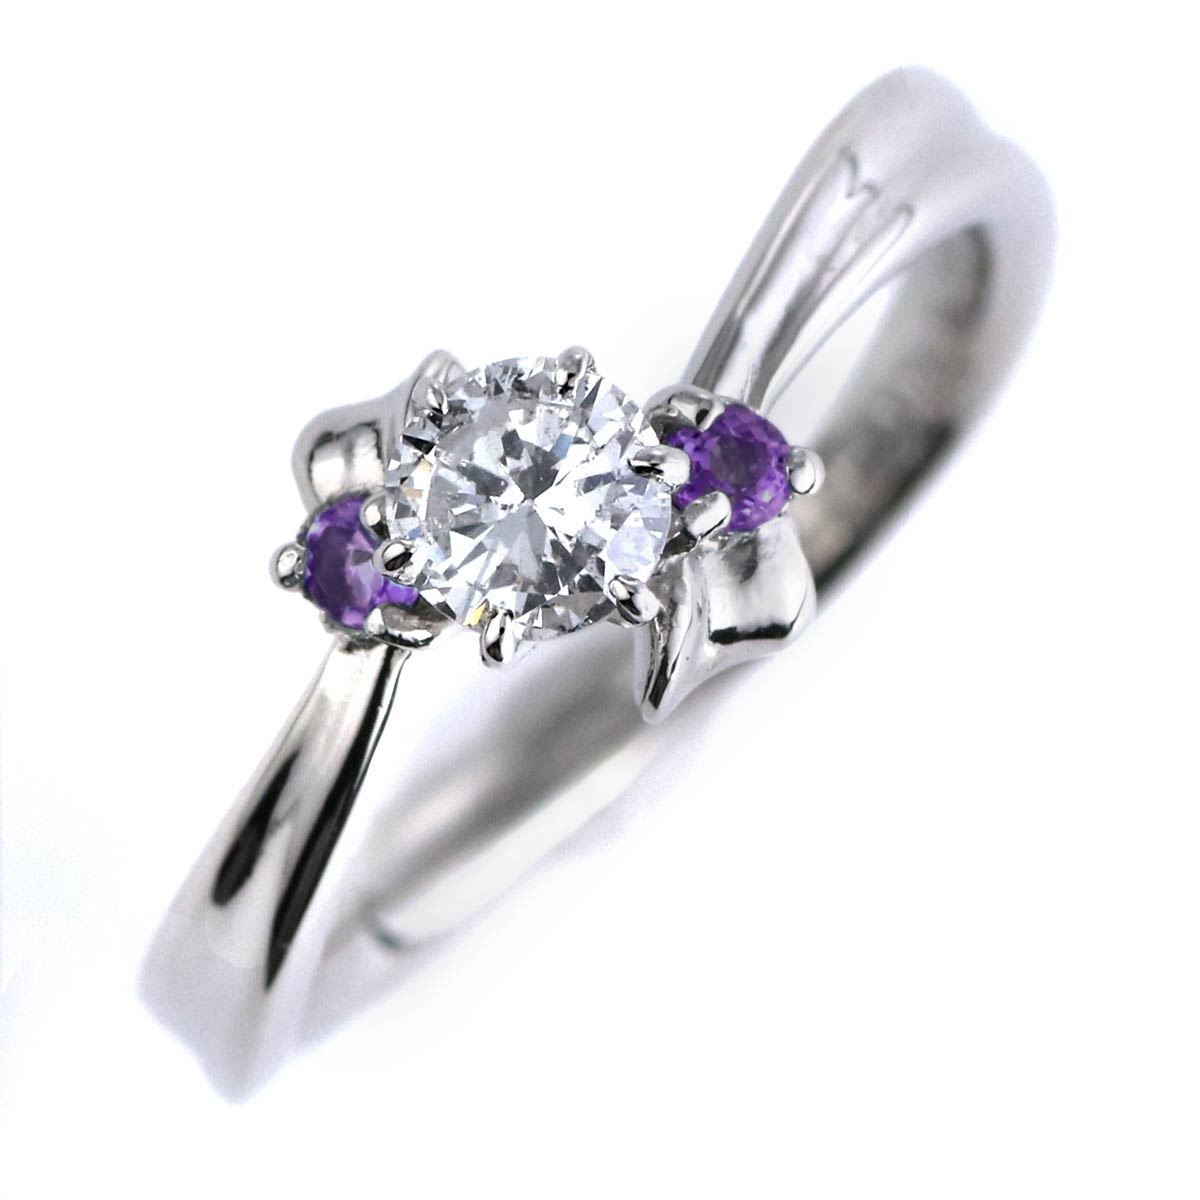 婚約指輪 ダイヤモンド プラチナリング 一粒 大粒 指輪 エンゲージリング 0.5ct プロポーズ用 レディース 人気 ダイヤ 刻印無料 2月